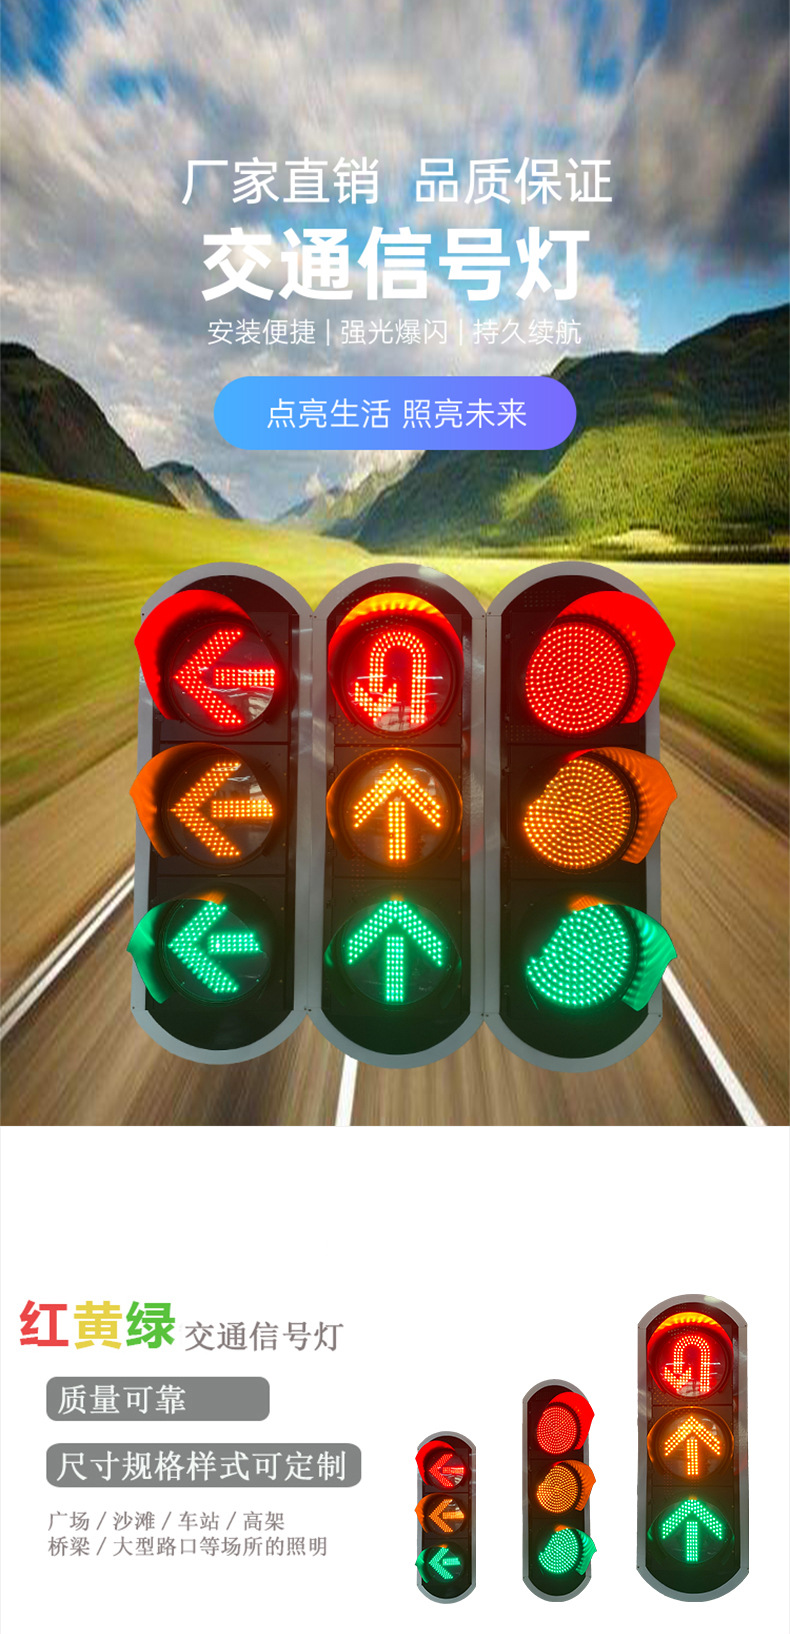 【厂家定制】红黄绿箭头满屏转向交通信号灯道路交通安全指示灯